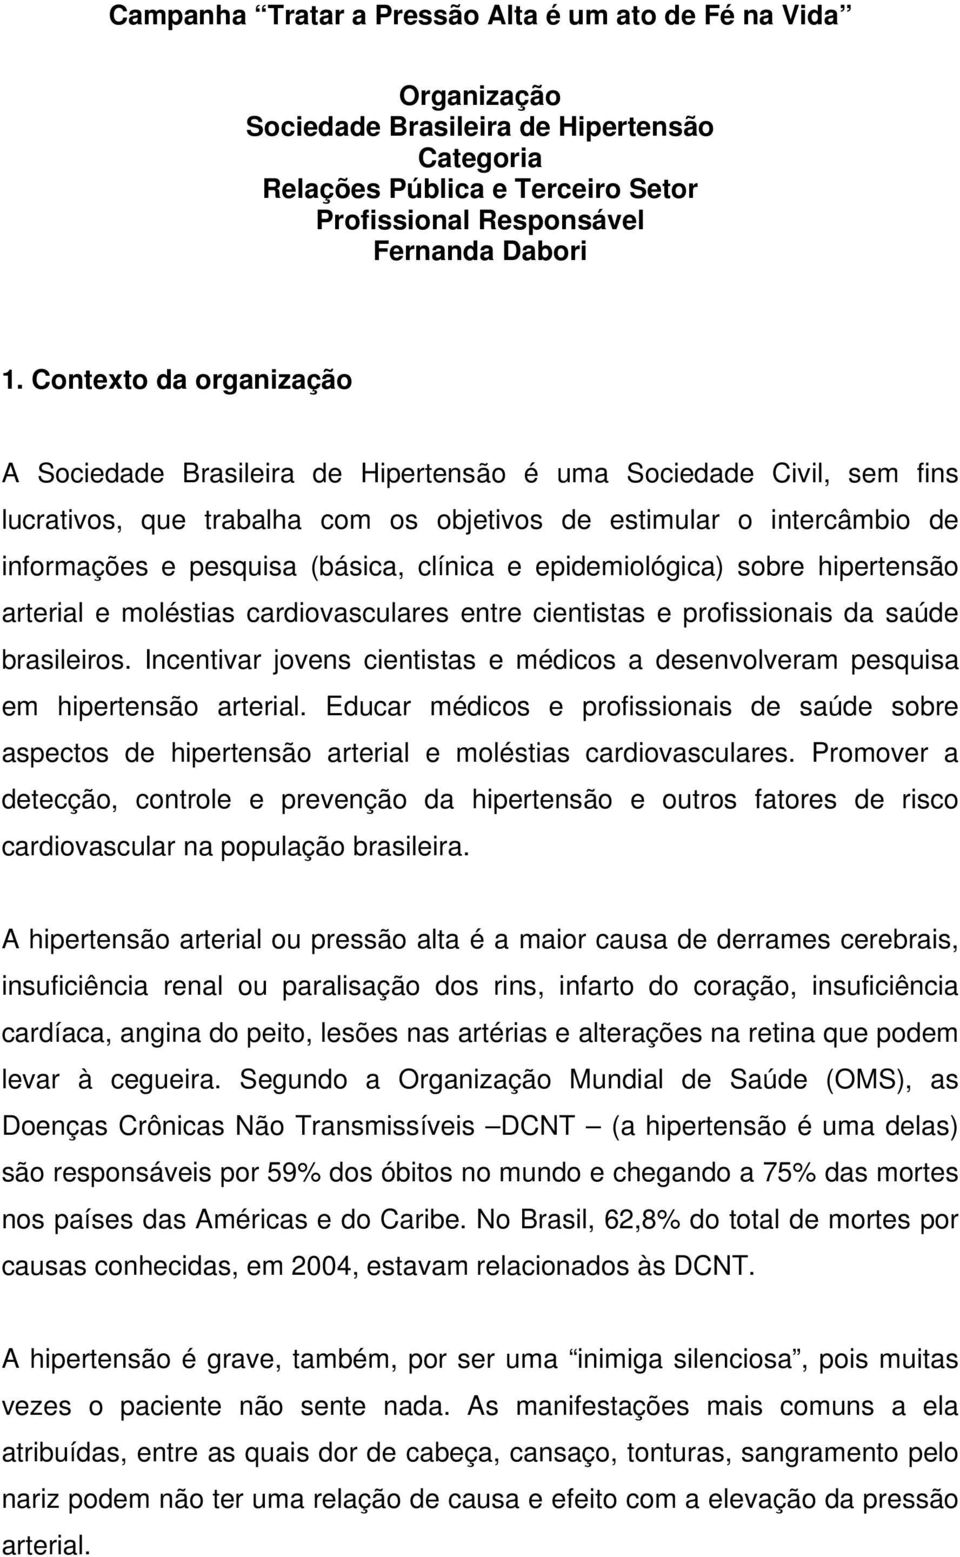 clínica e epidemiológica) sobre hipertensão arterial e moléstias cardiovasculares entre cientistas e profissionais da saúde brasileiros.